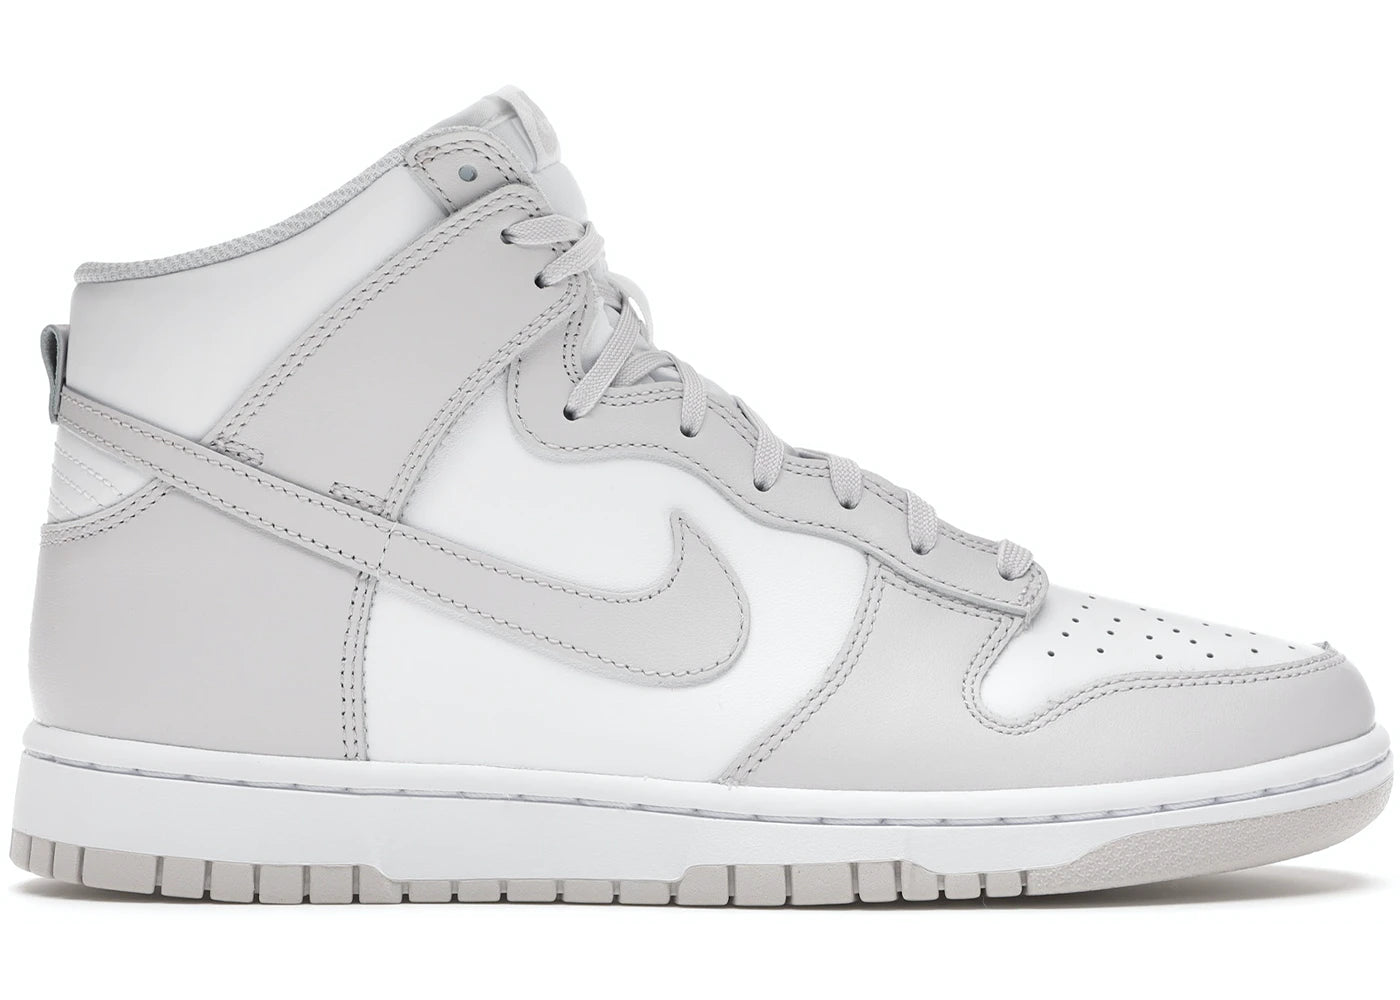 Nike Dunk High Retro White Vast Grey (2021) - Used